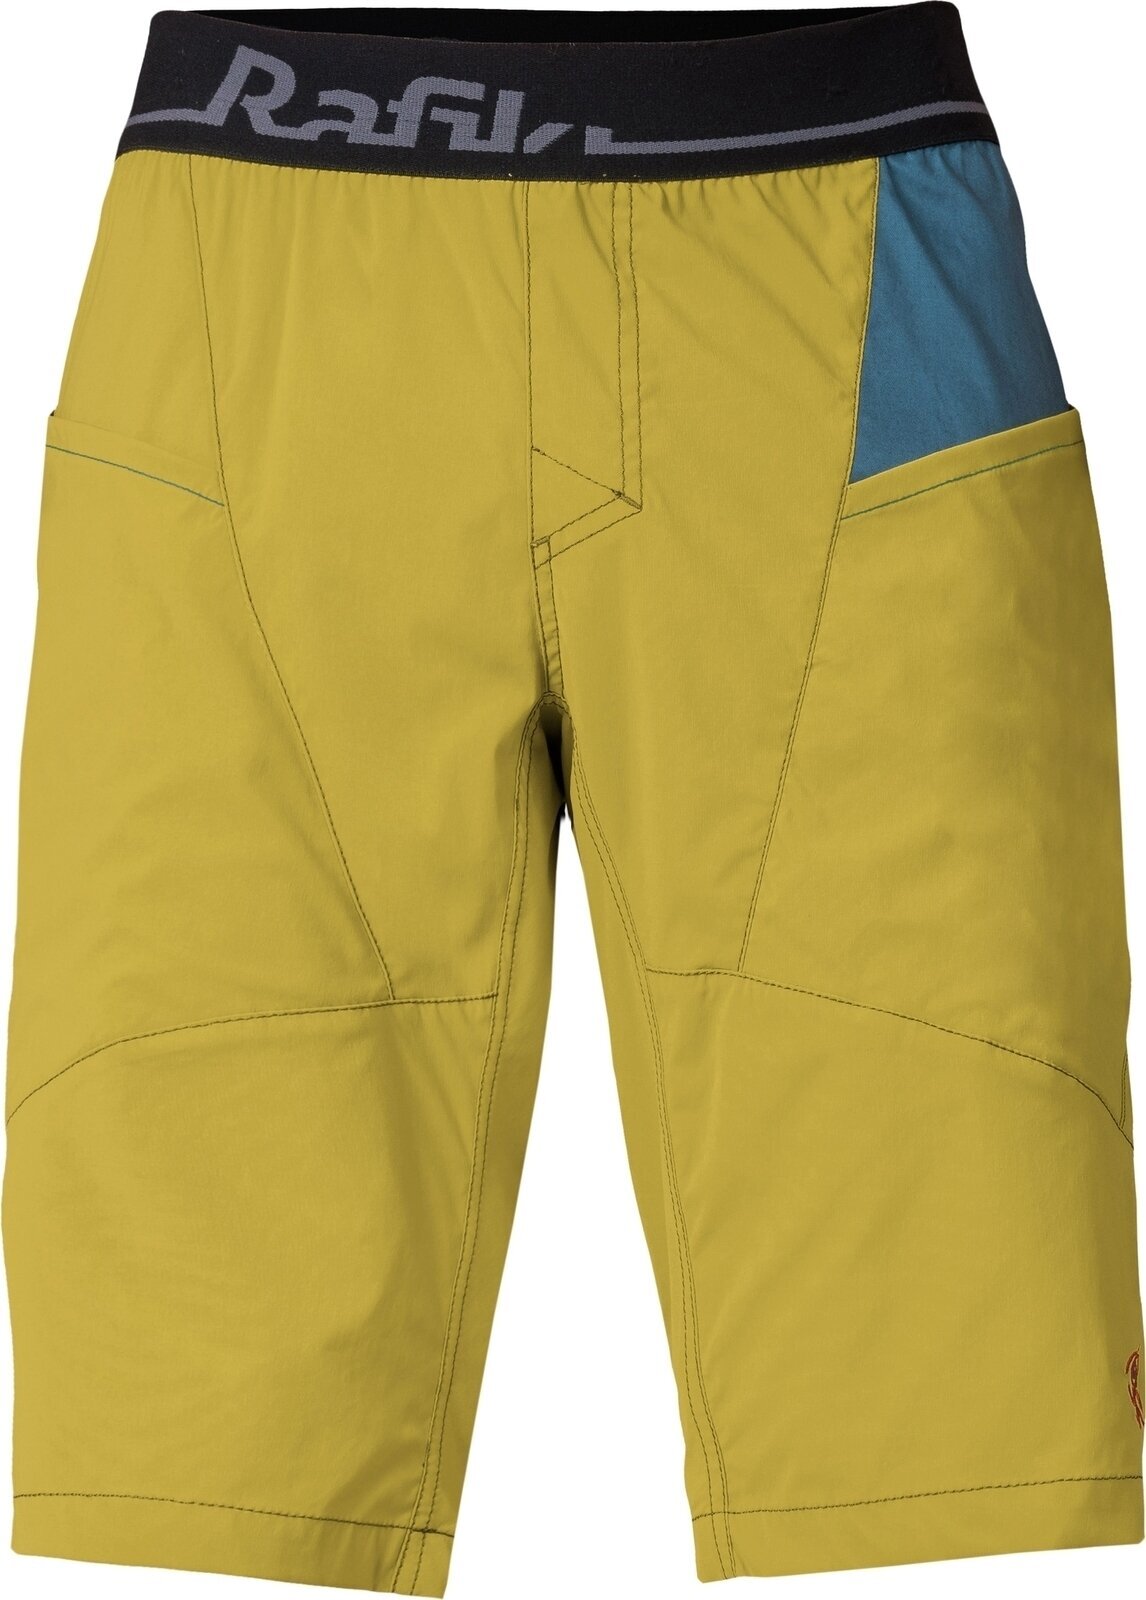 Shorts til udendørs brug Rafiki Megos Man Shorts Cress Green/Stargazer S Shorts til udendørs brug